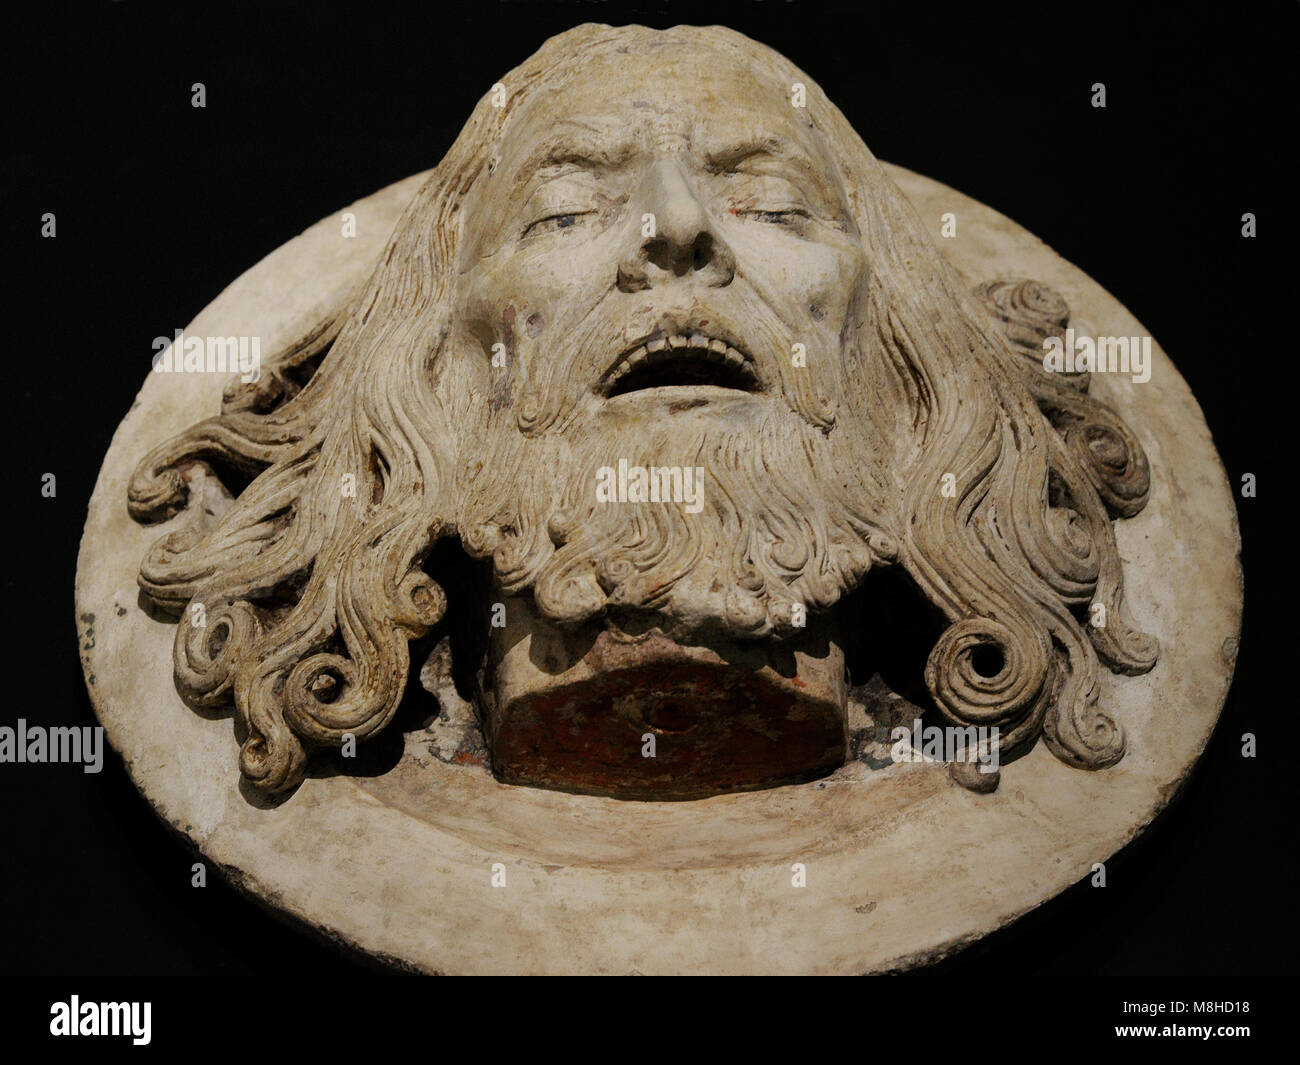 Chef de st. Jean le Baptiste sur un plateau. Rhénanie, c. 1480-1520. La pierre calcaire, restes de polychromie. Schnütgen Museum. Cologne, Allemagne. Banque D'Images